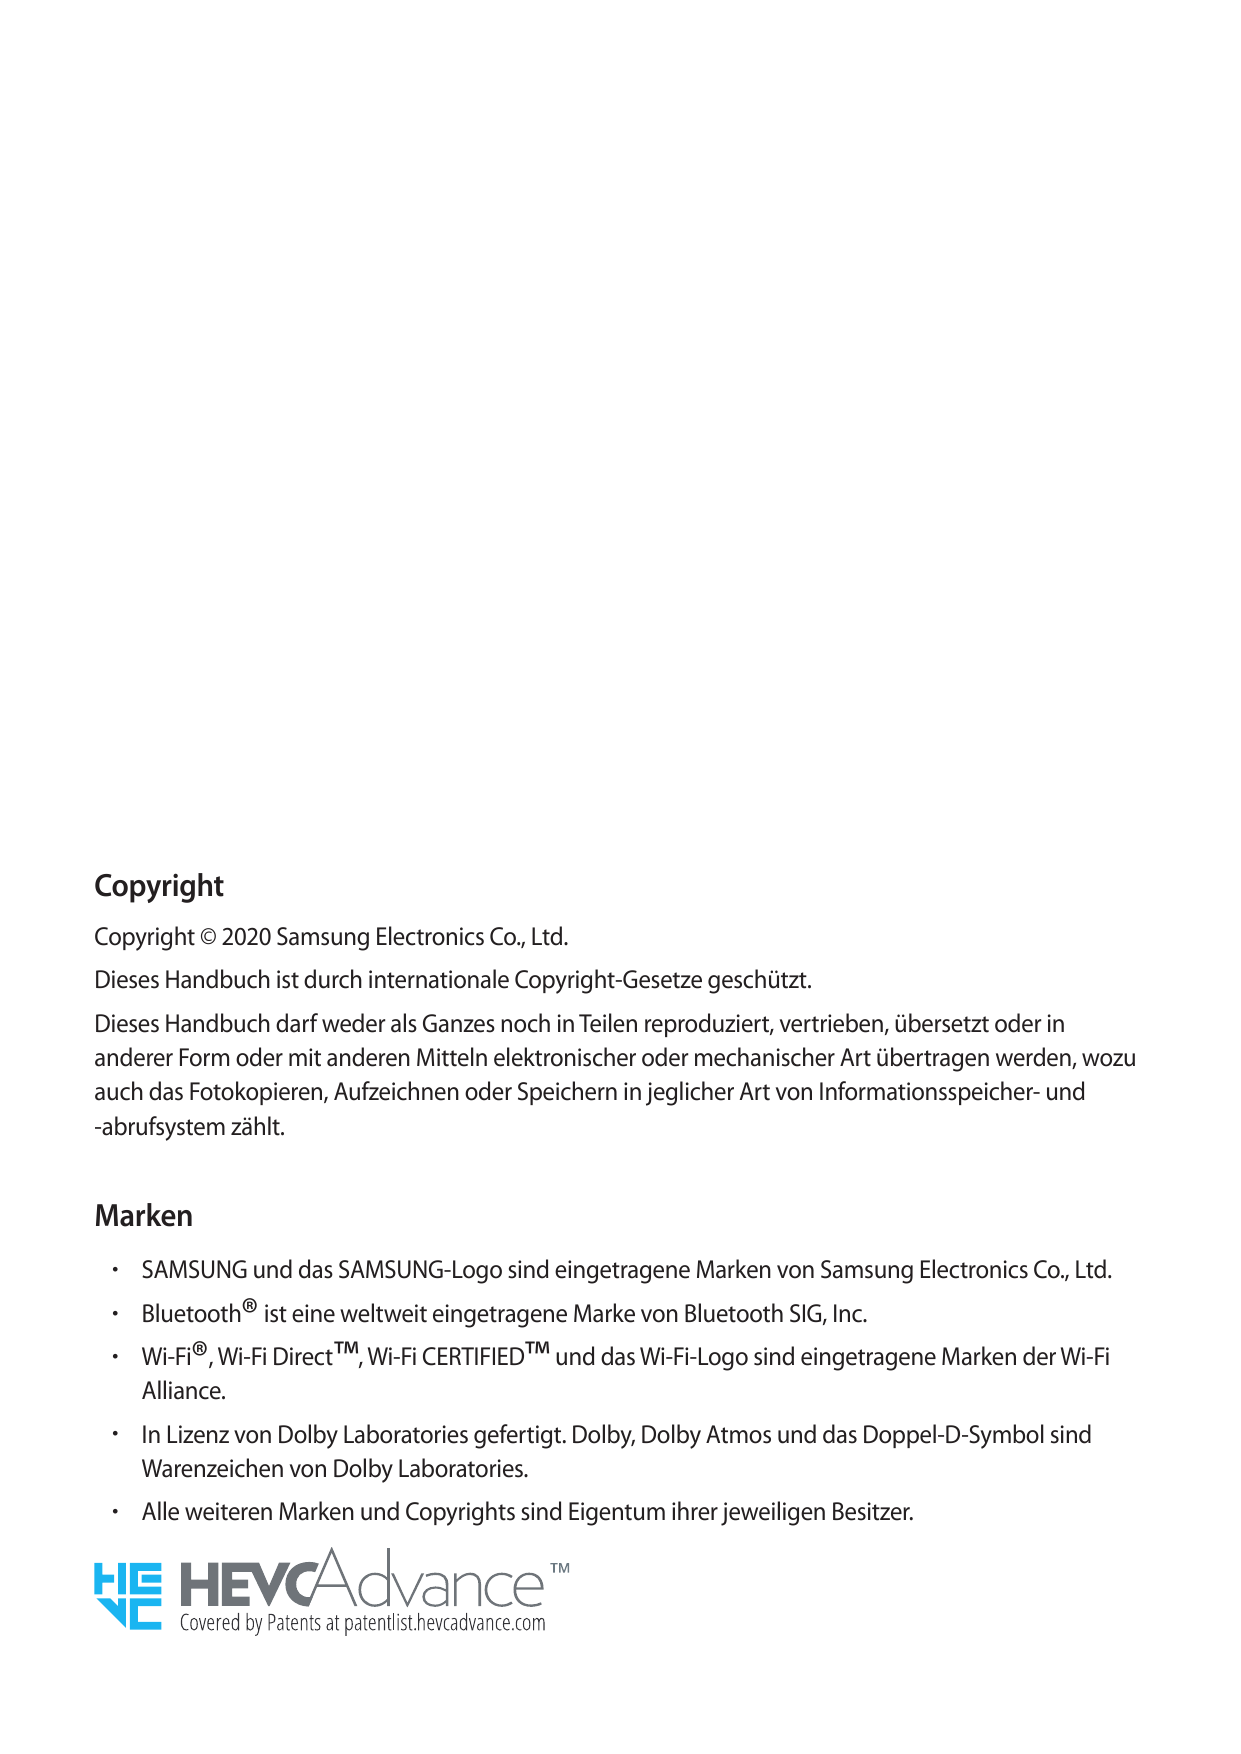 CopyrightCopyright © 2020 Samsung Electronics Co., Ltd.Dieses Handbuch ist durch internationale Copyright-Gesetze geschützt.Dies